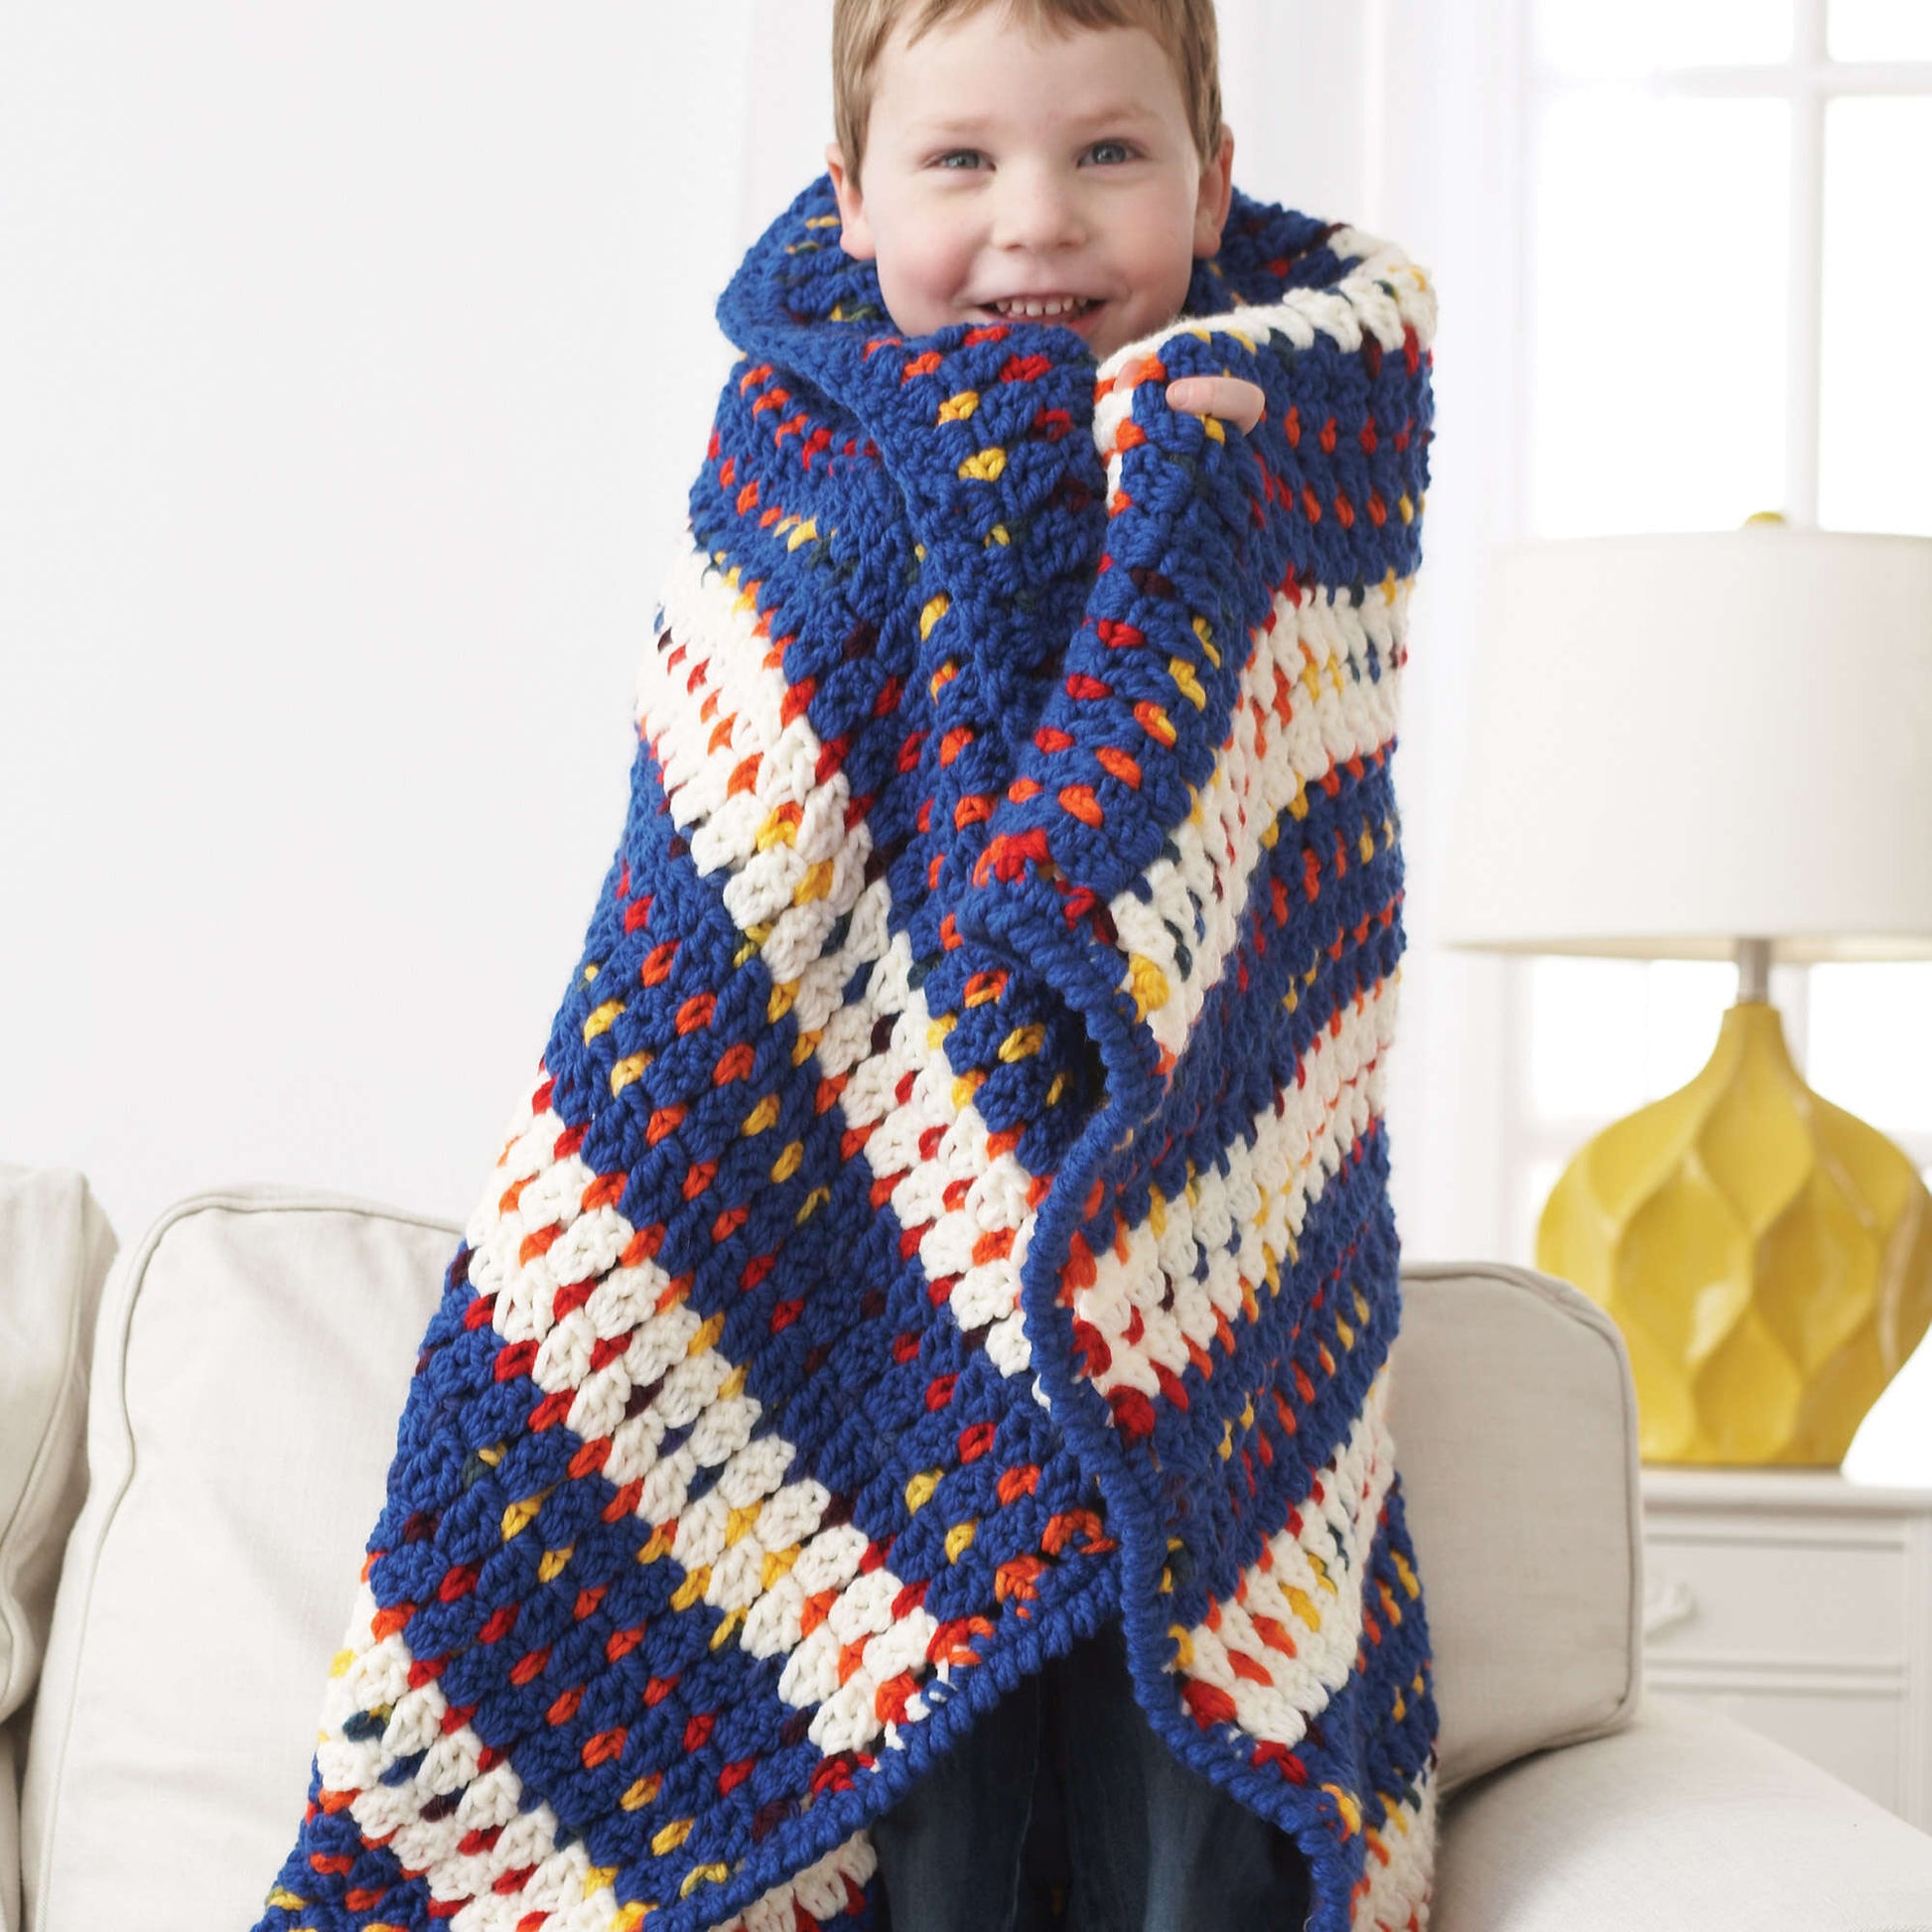 Free Bernat Woven-Look Striped Crochet Blanket Pattern